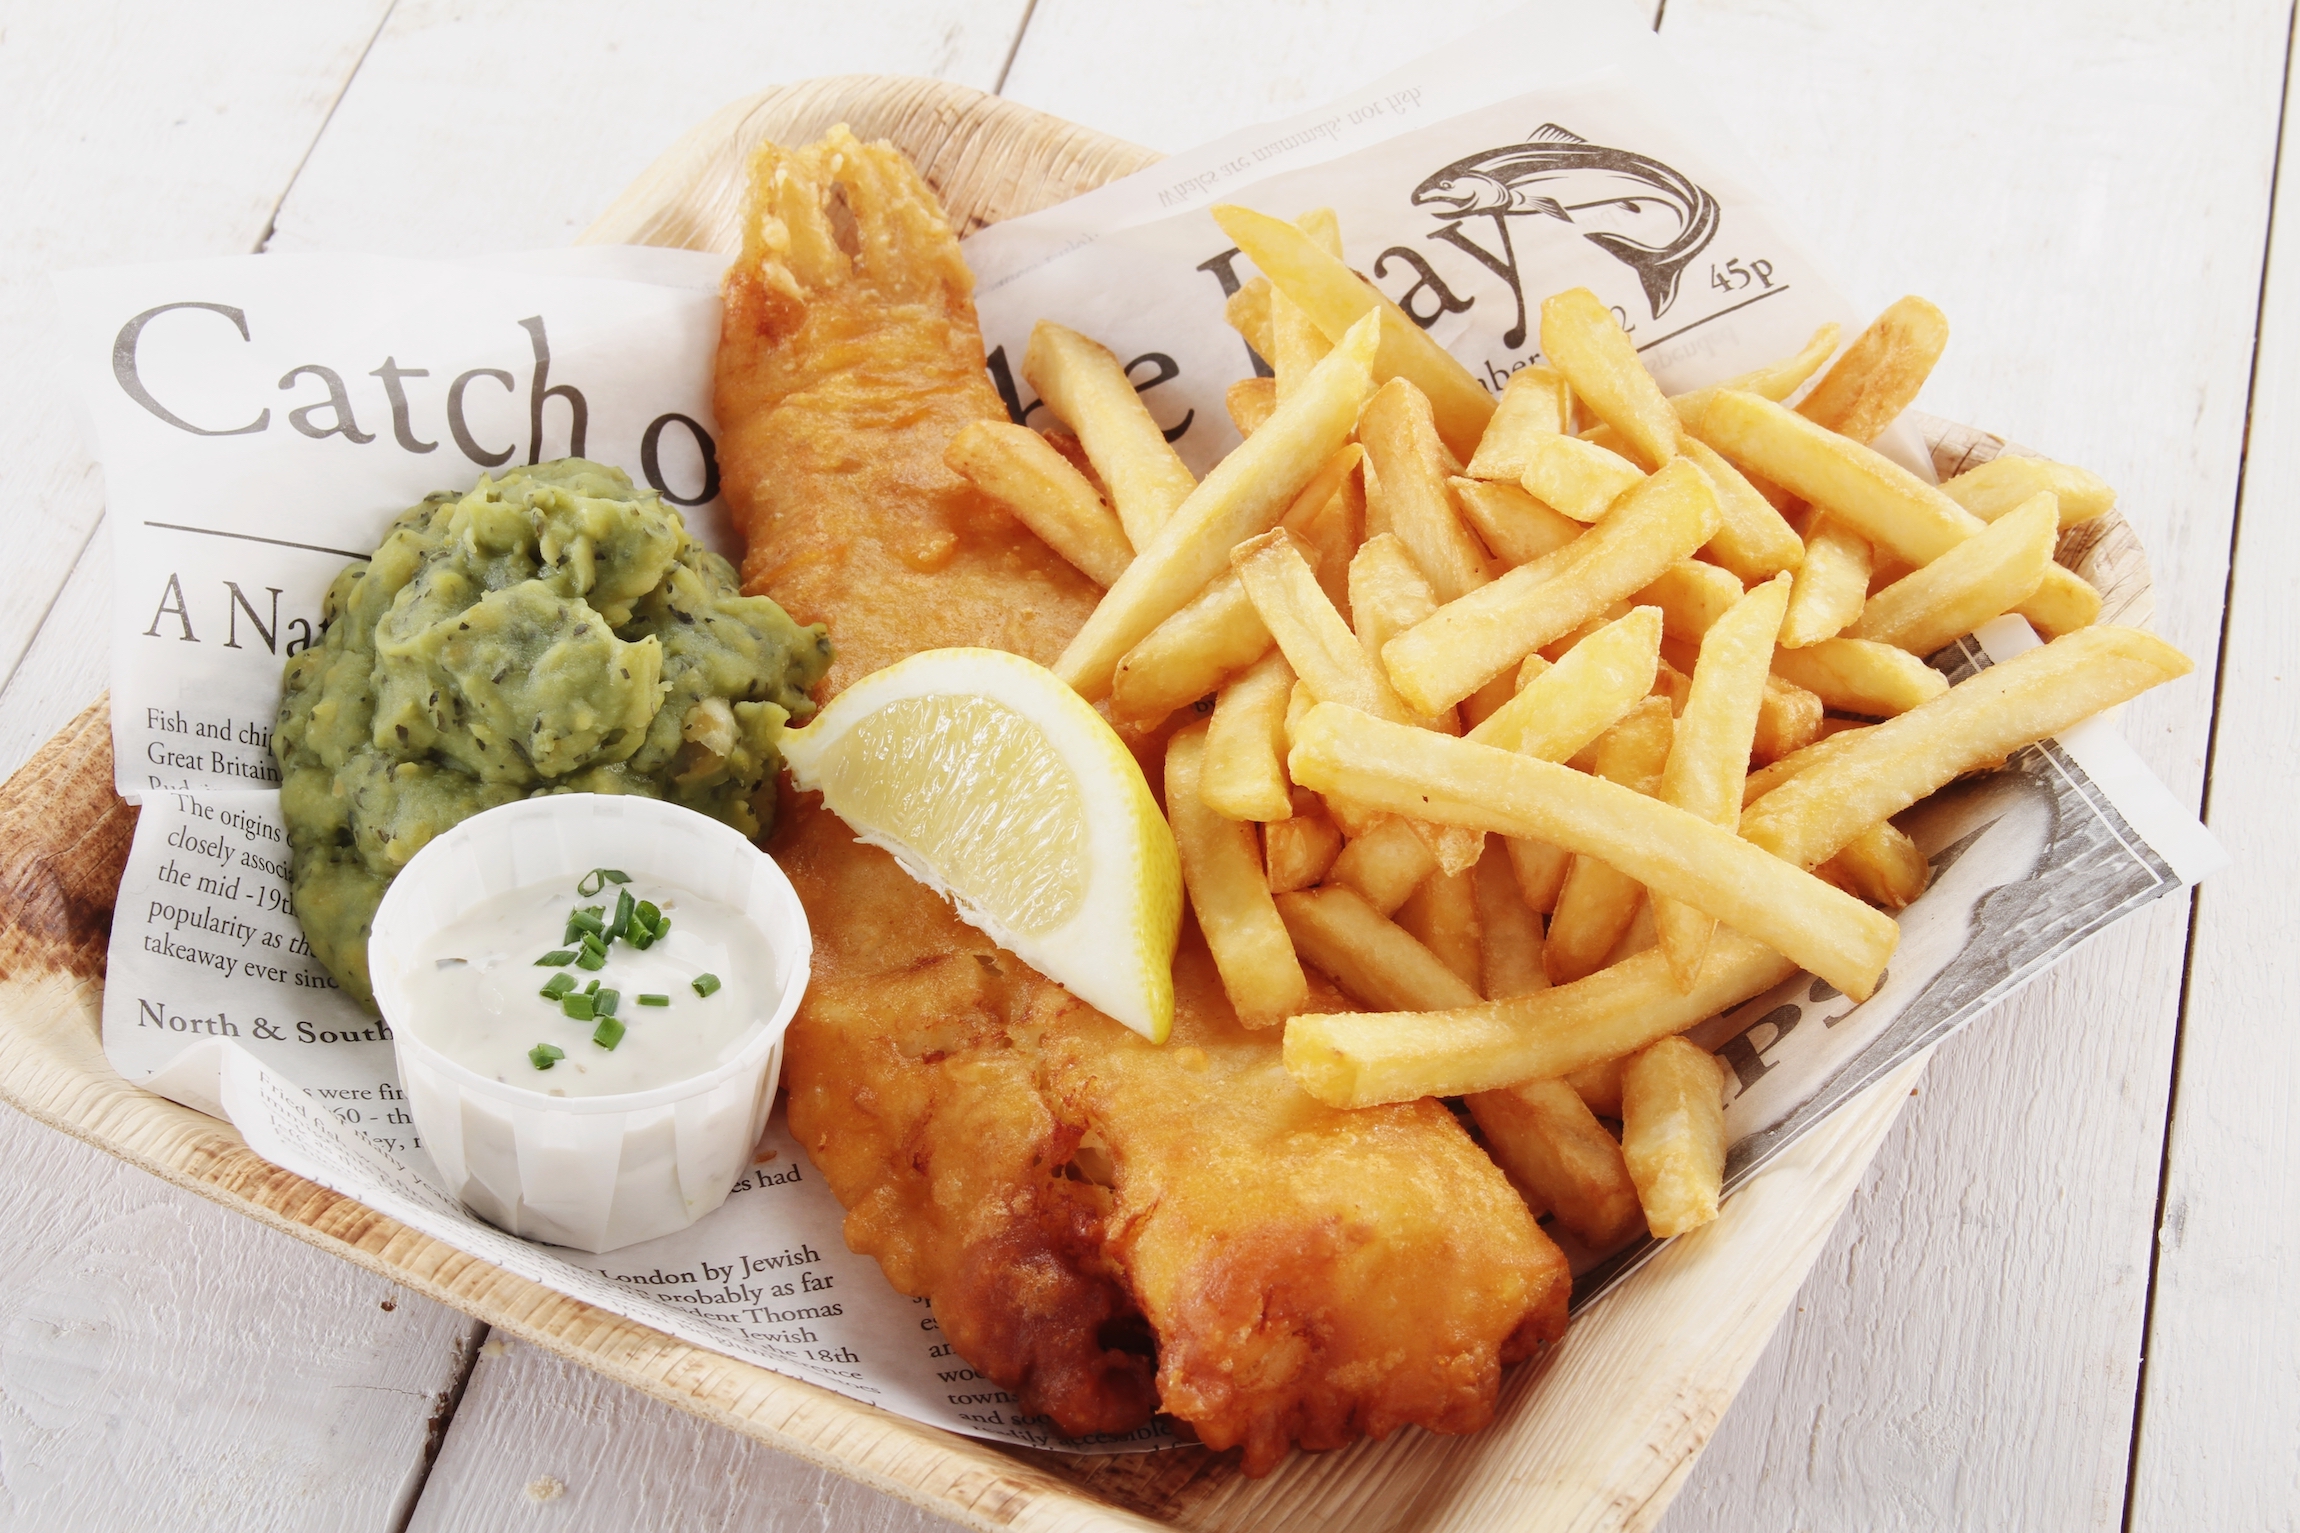 tradycyjne brytyjskie ryby i frytki - Co warto zjeść w Cork?